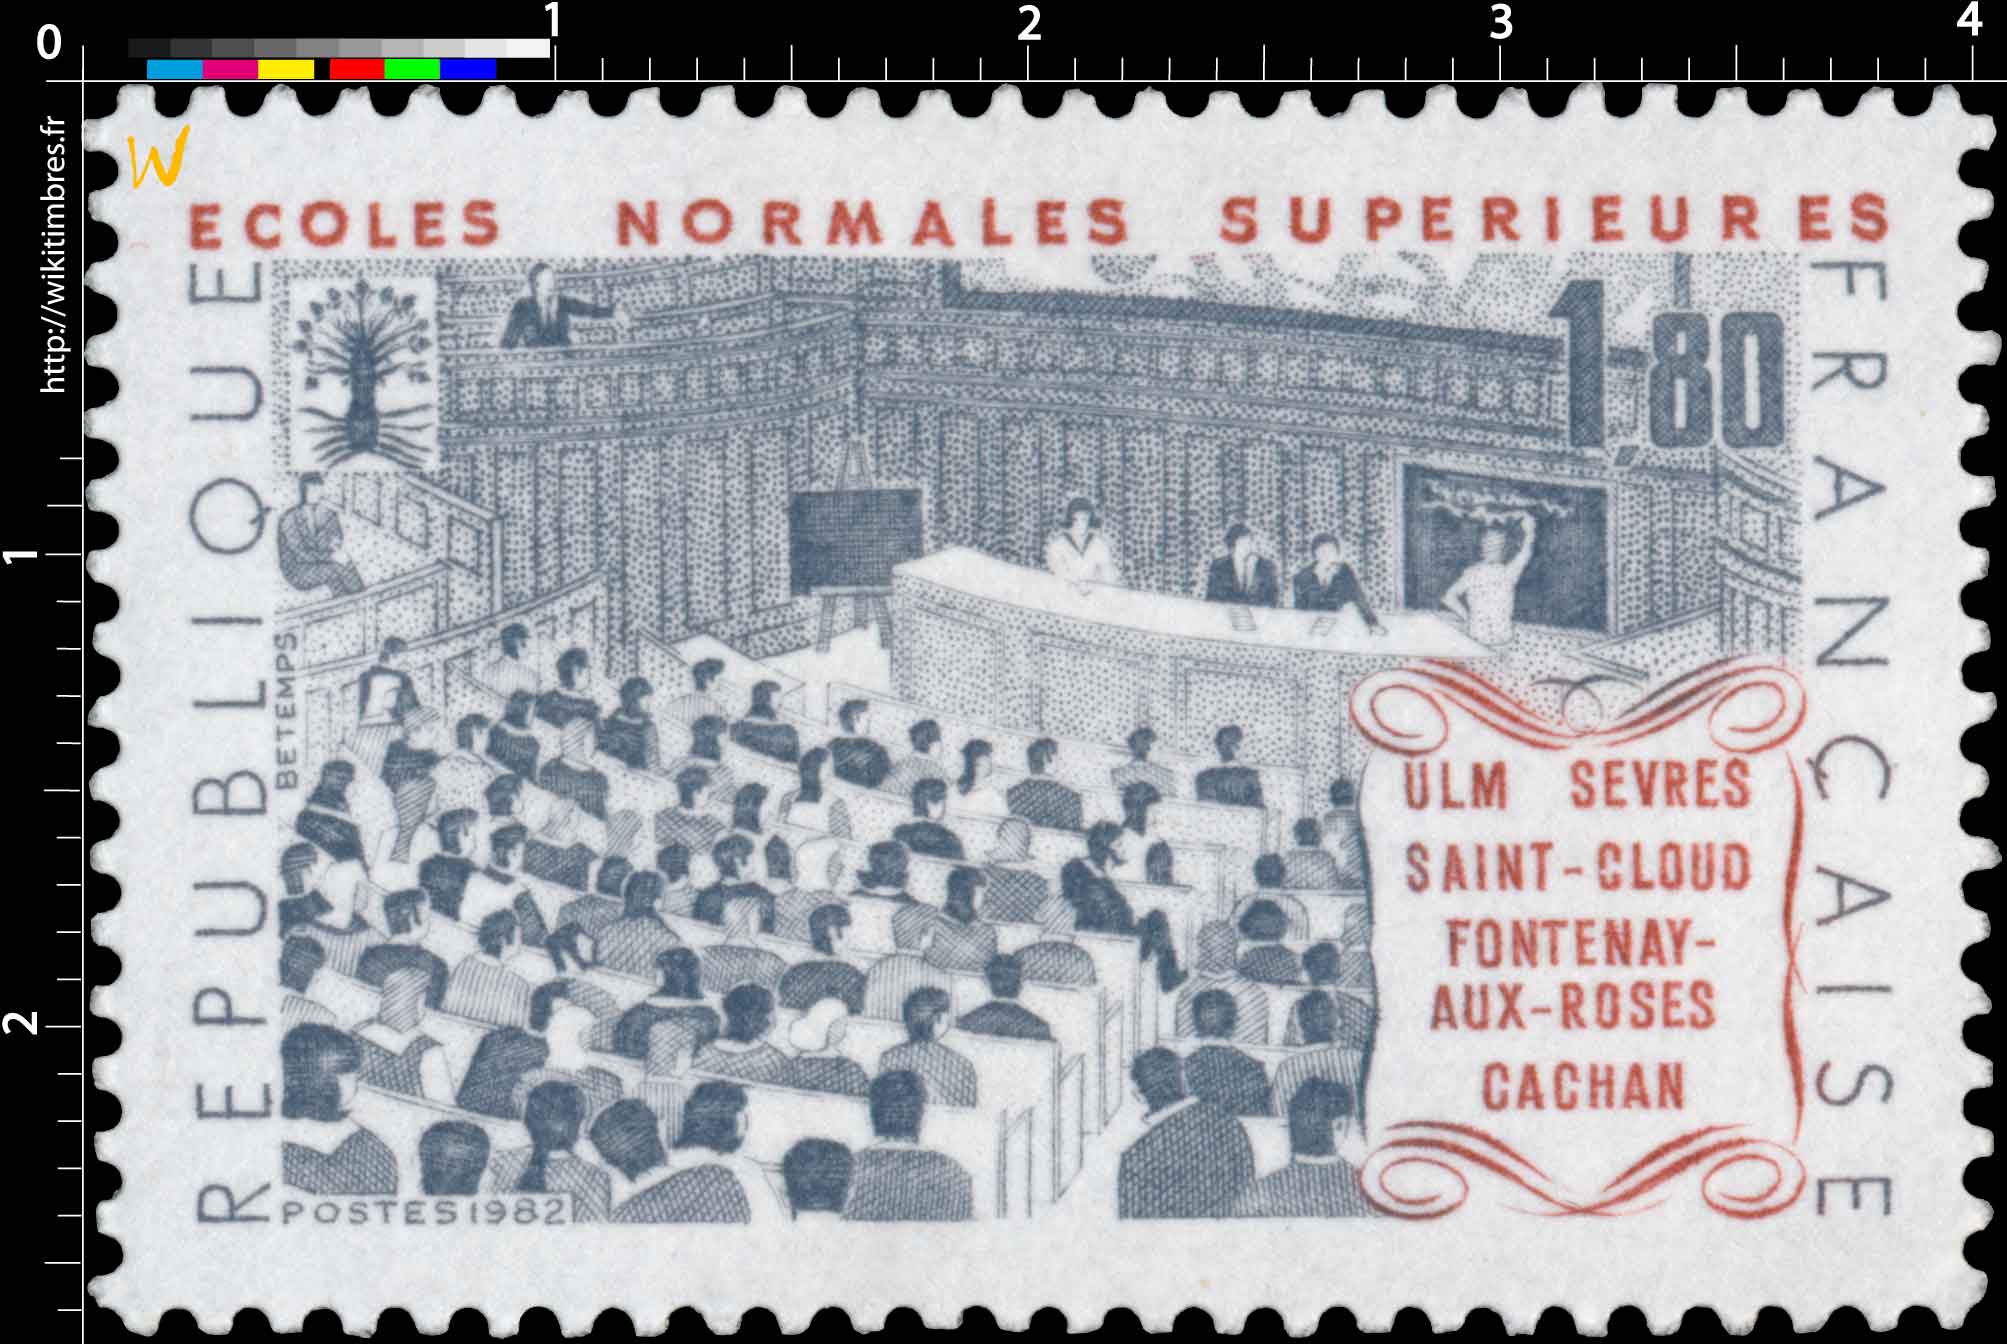 1982 ÉCOLES NORMALES SUPÉRIEURE ULM SÈVRES SAINT-CLOUD FONTENAY-AUX-ROSES CACHAN